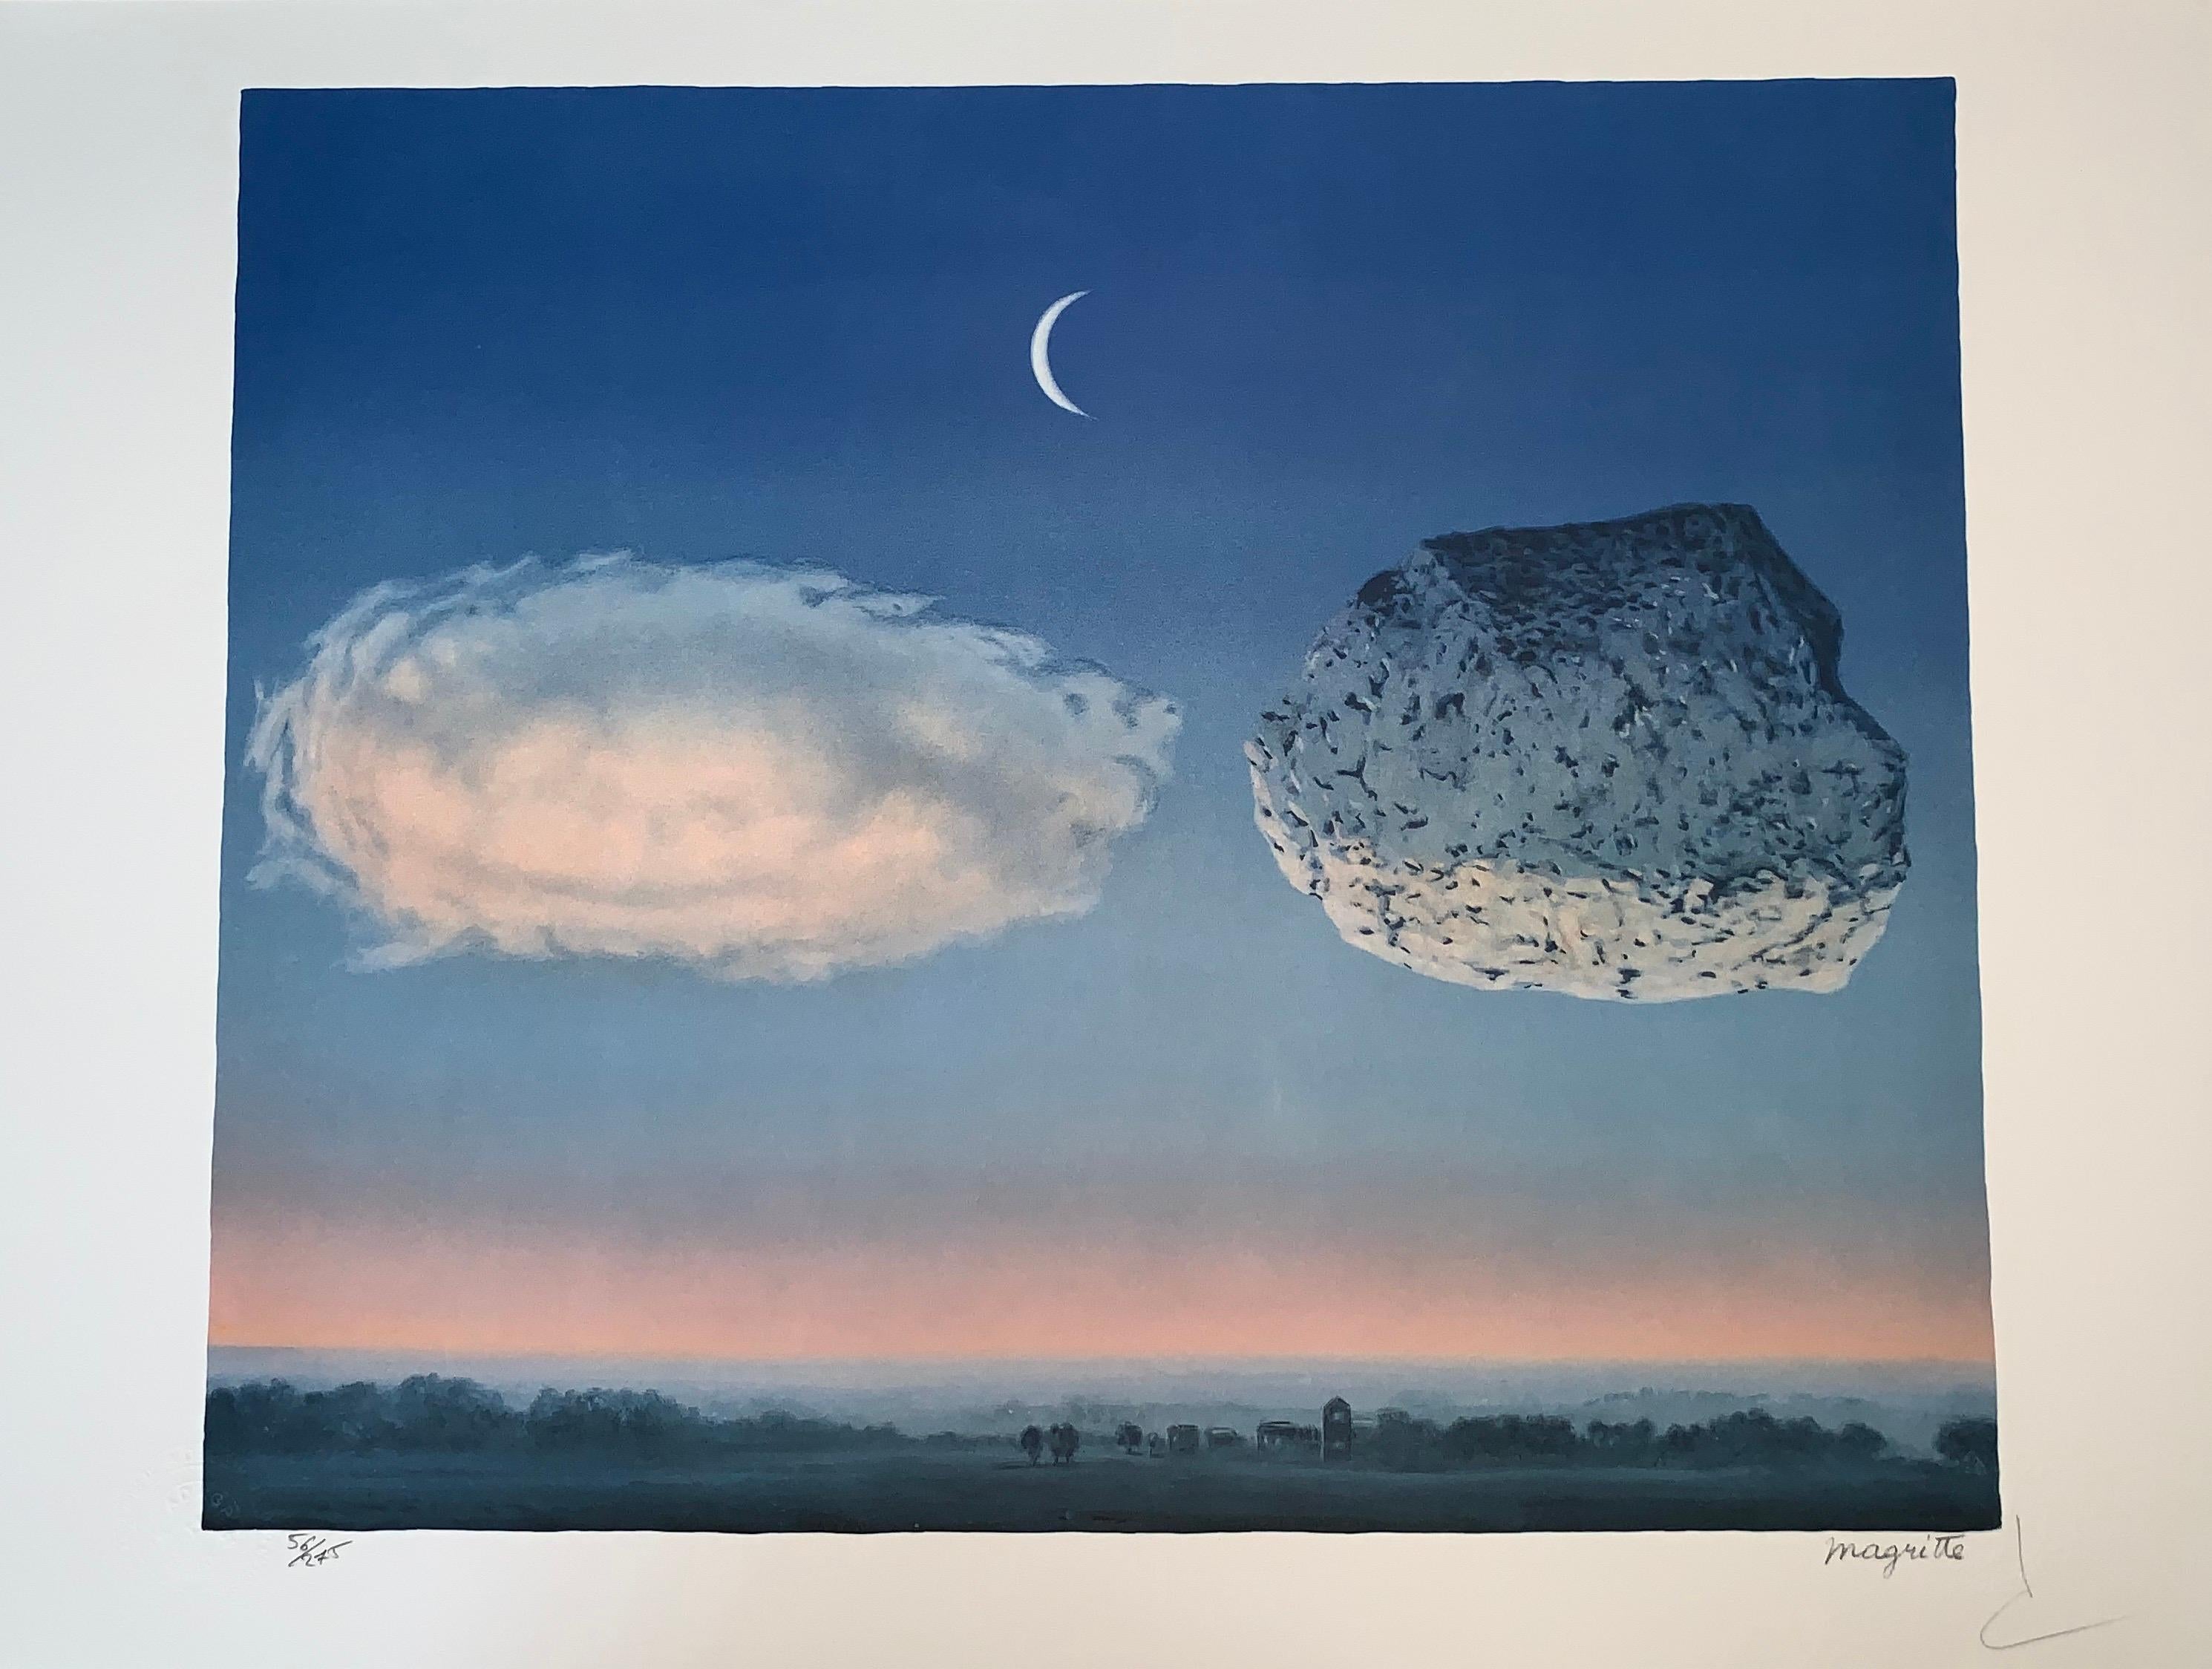 La Bataille de l'Argonne - 20th Century, Surrealist, Lithograph, Figurative Prin - Print by (after) René Magritte